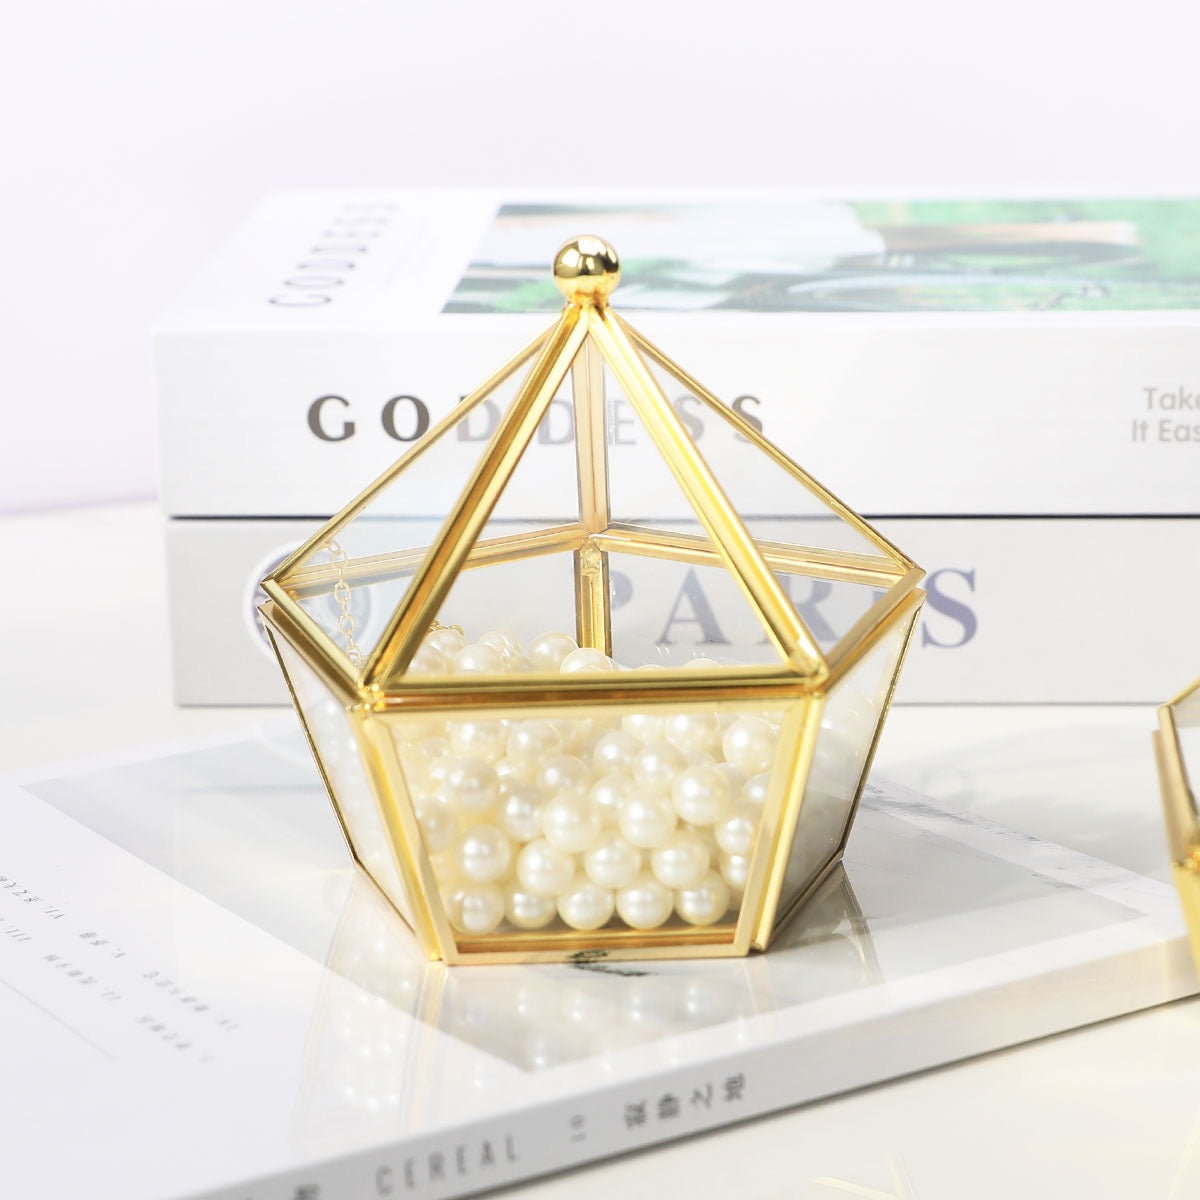 Reikistal Copper-Edged Glass Demagnetizing Jewelry Box Stone Storage Decorative Piece